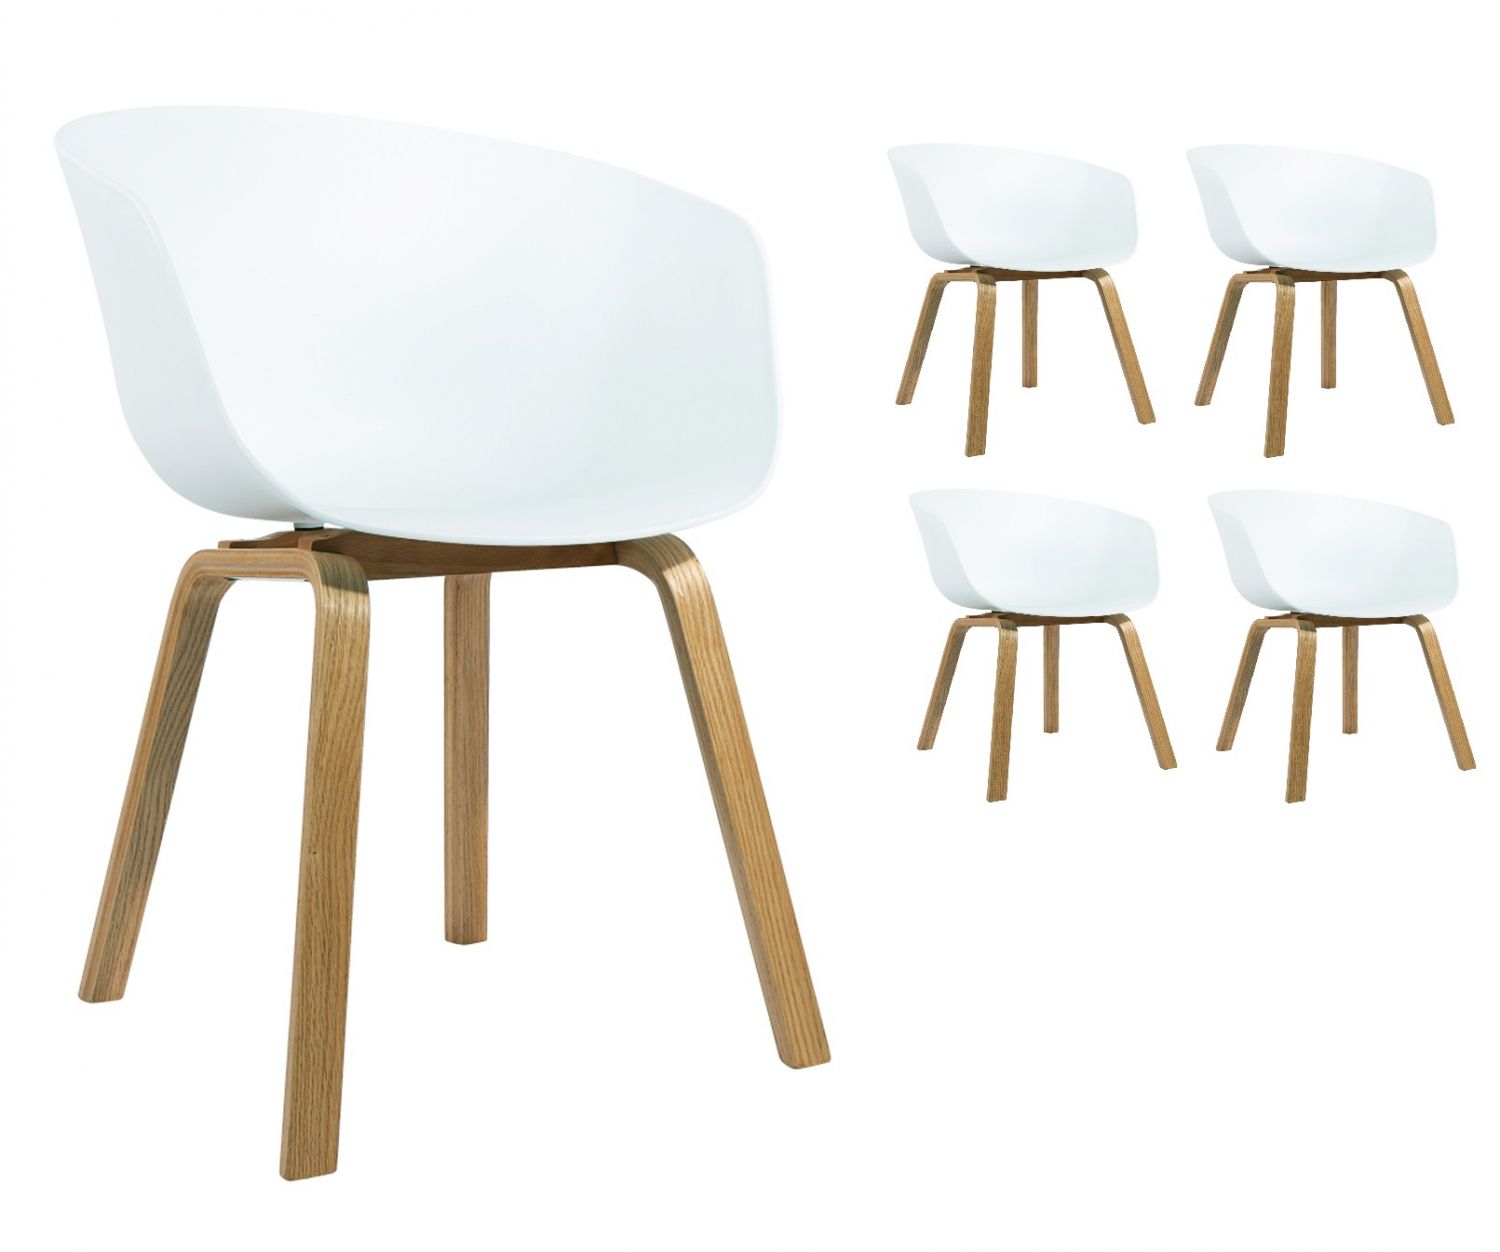 Set di 4 comodissime sedie scandinave con scocca in resina bianca rivestita  da un morbido tessuto blu e gambe in legno